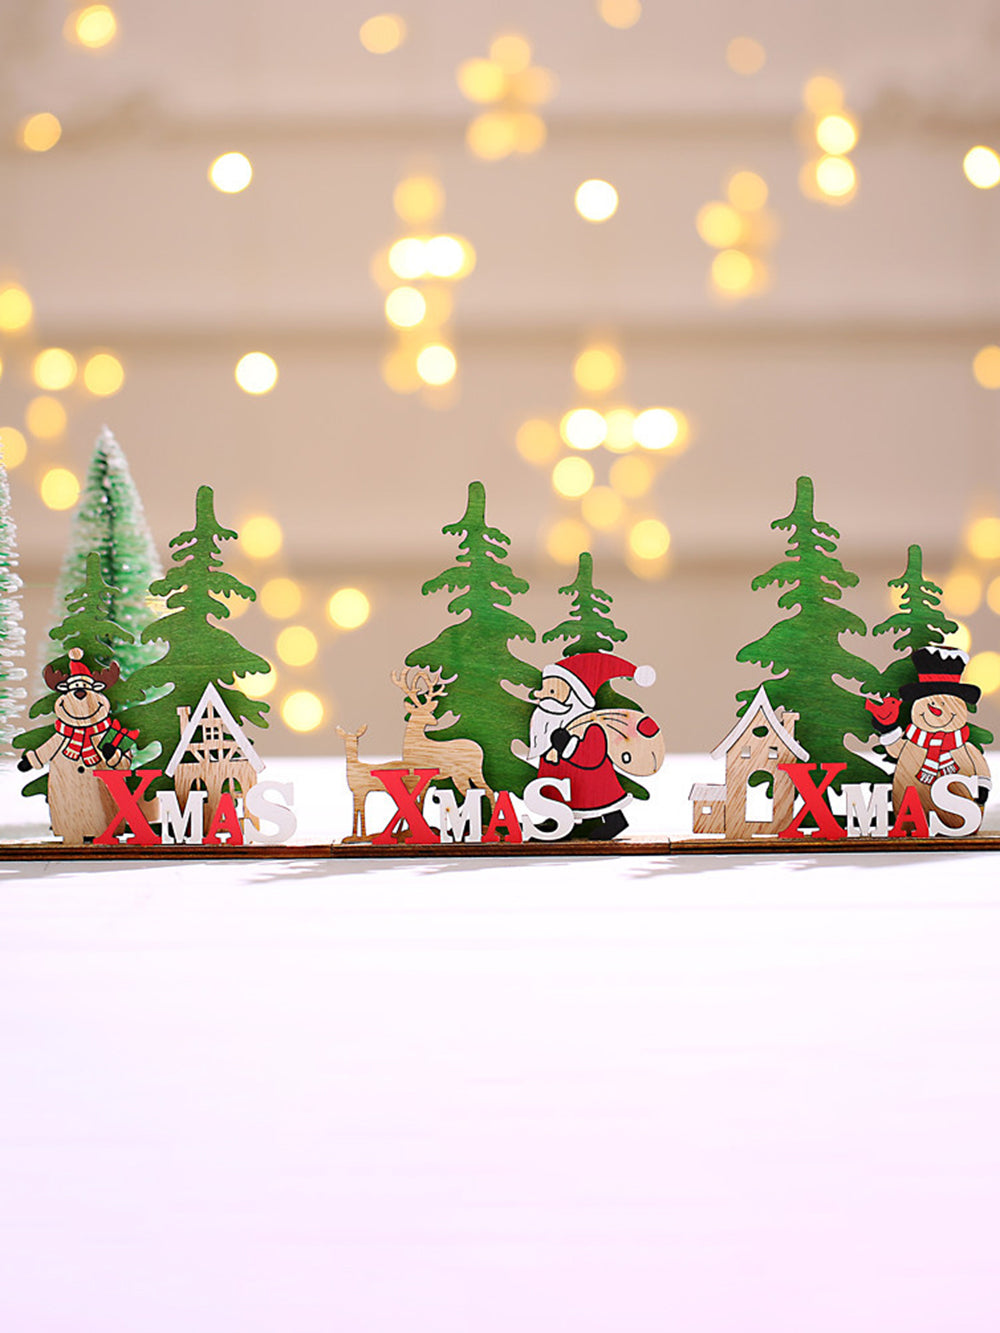 圣诞装饰 DIY 木制彩色餐桌装饰品